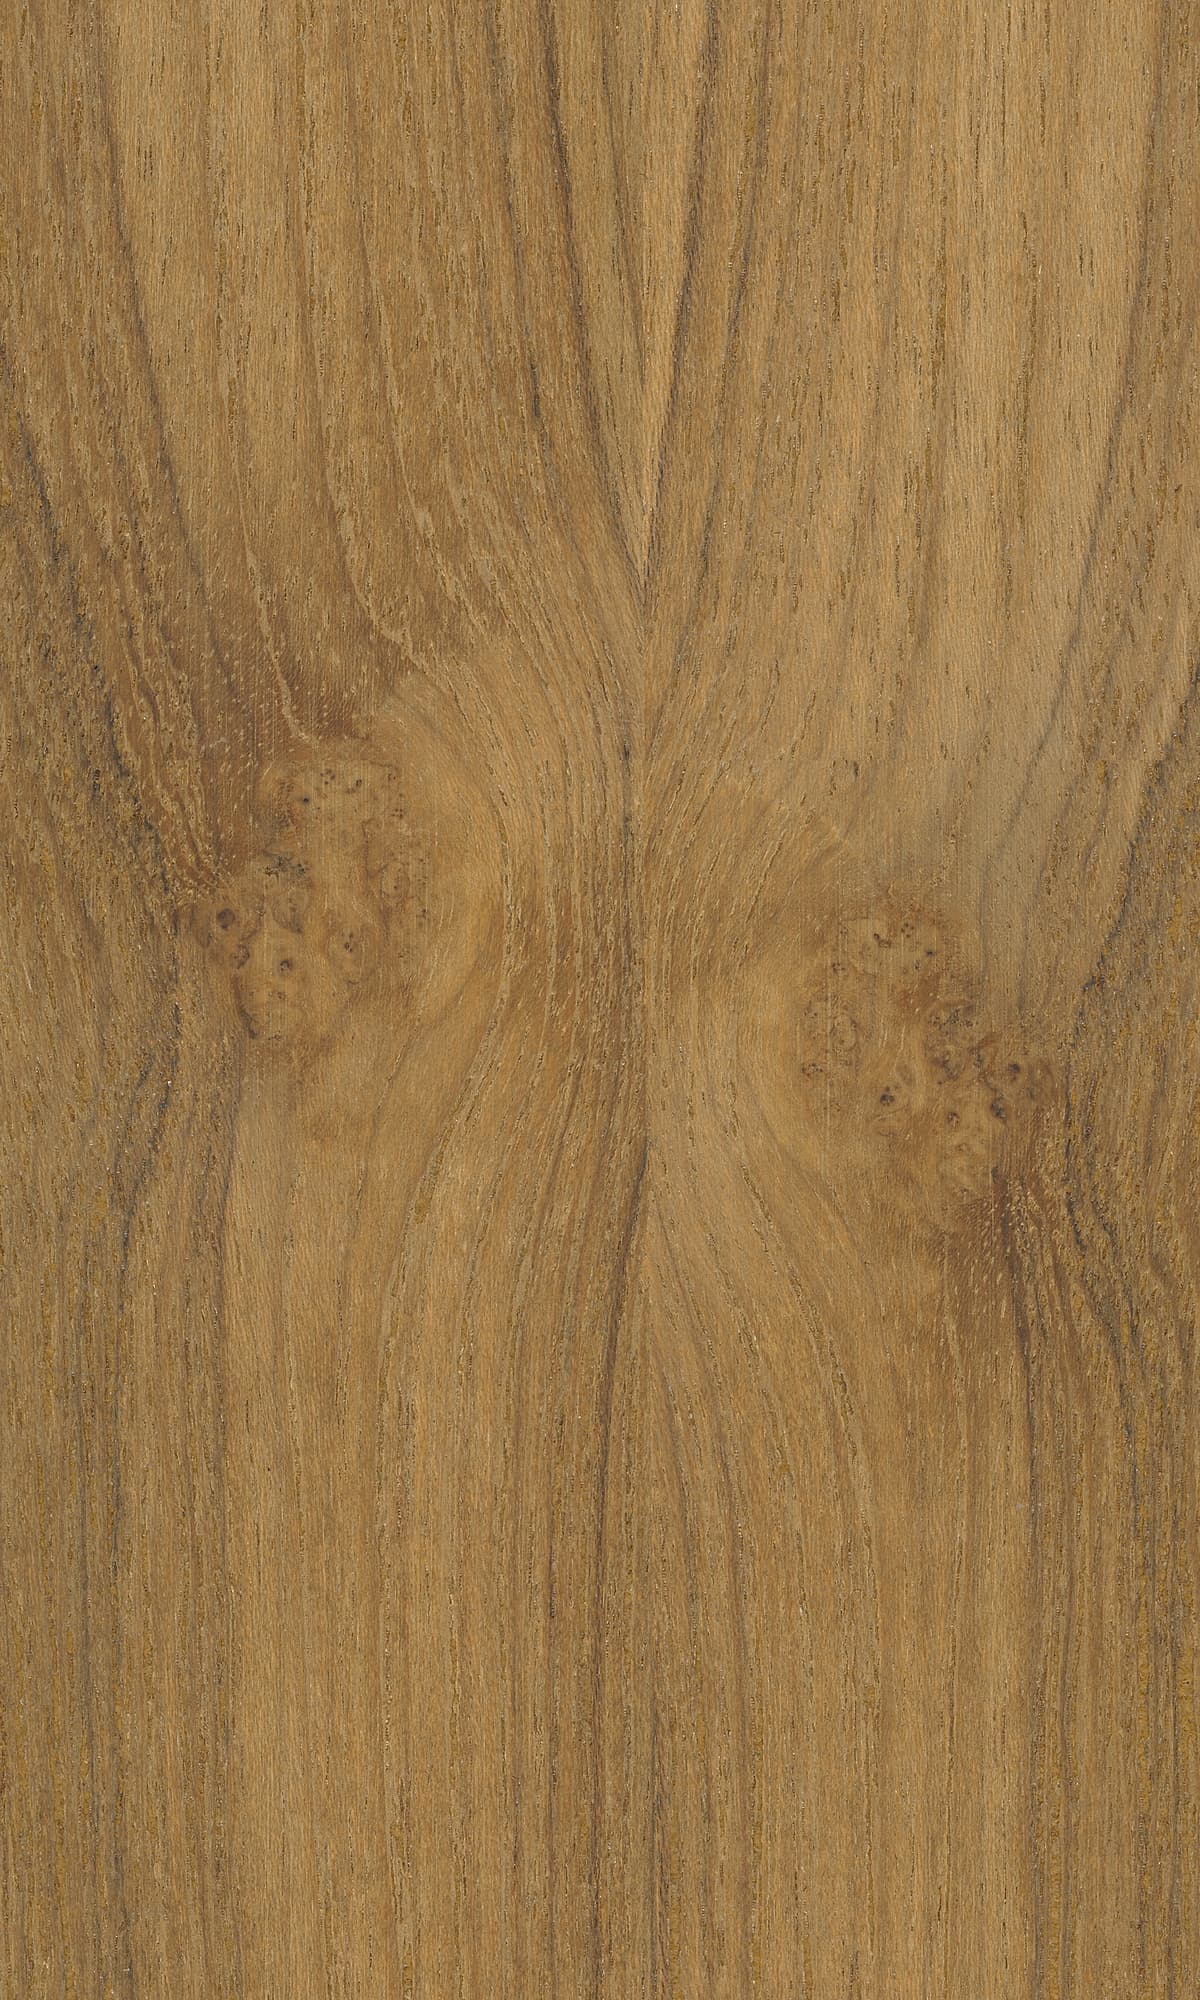 light teak wood texture